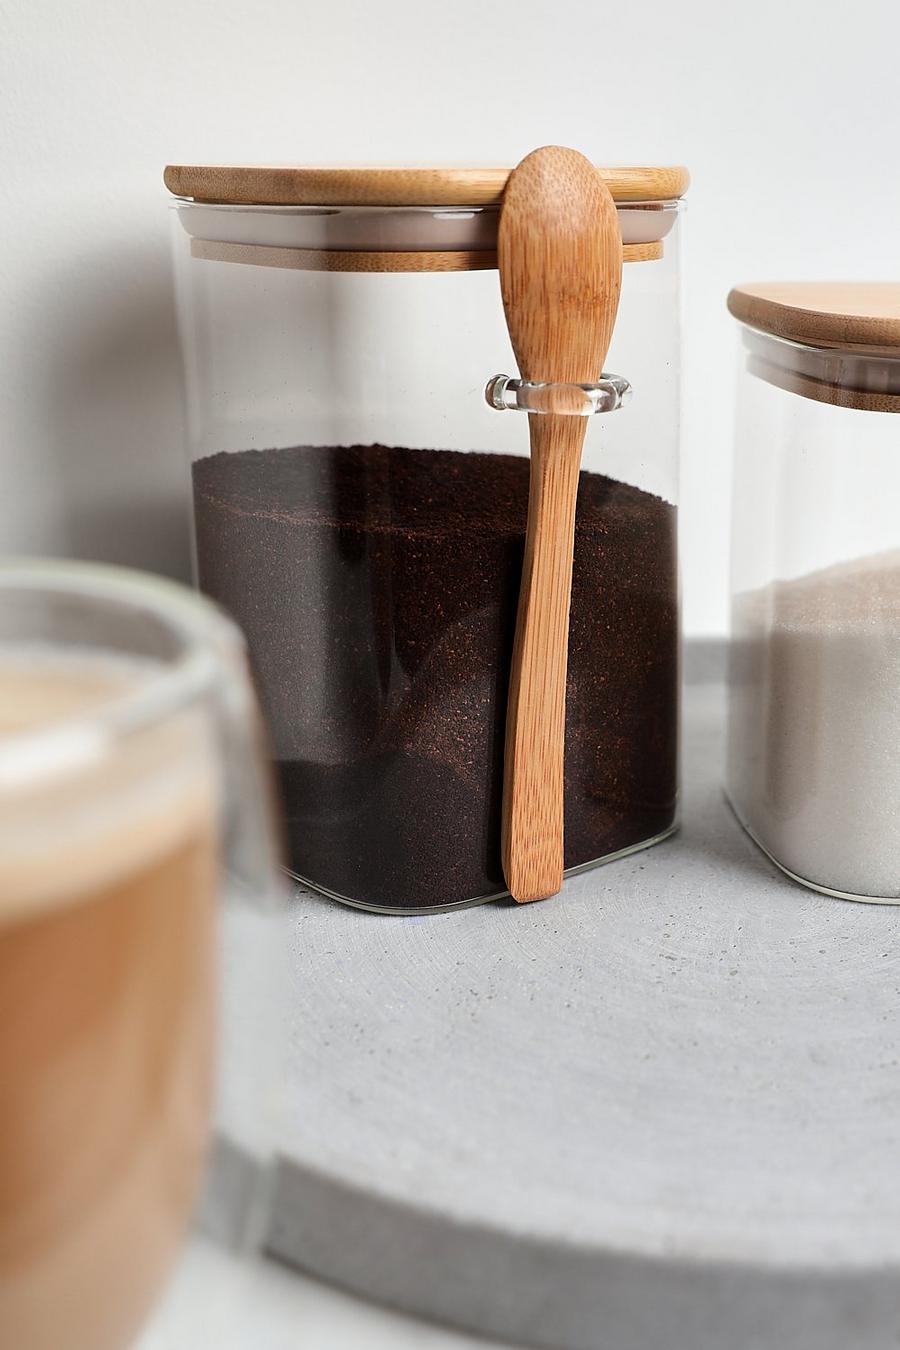 Clear Medium Storage Jar With Spoon